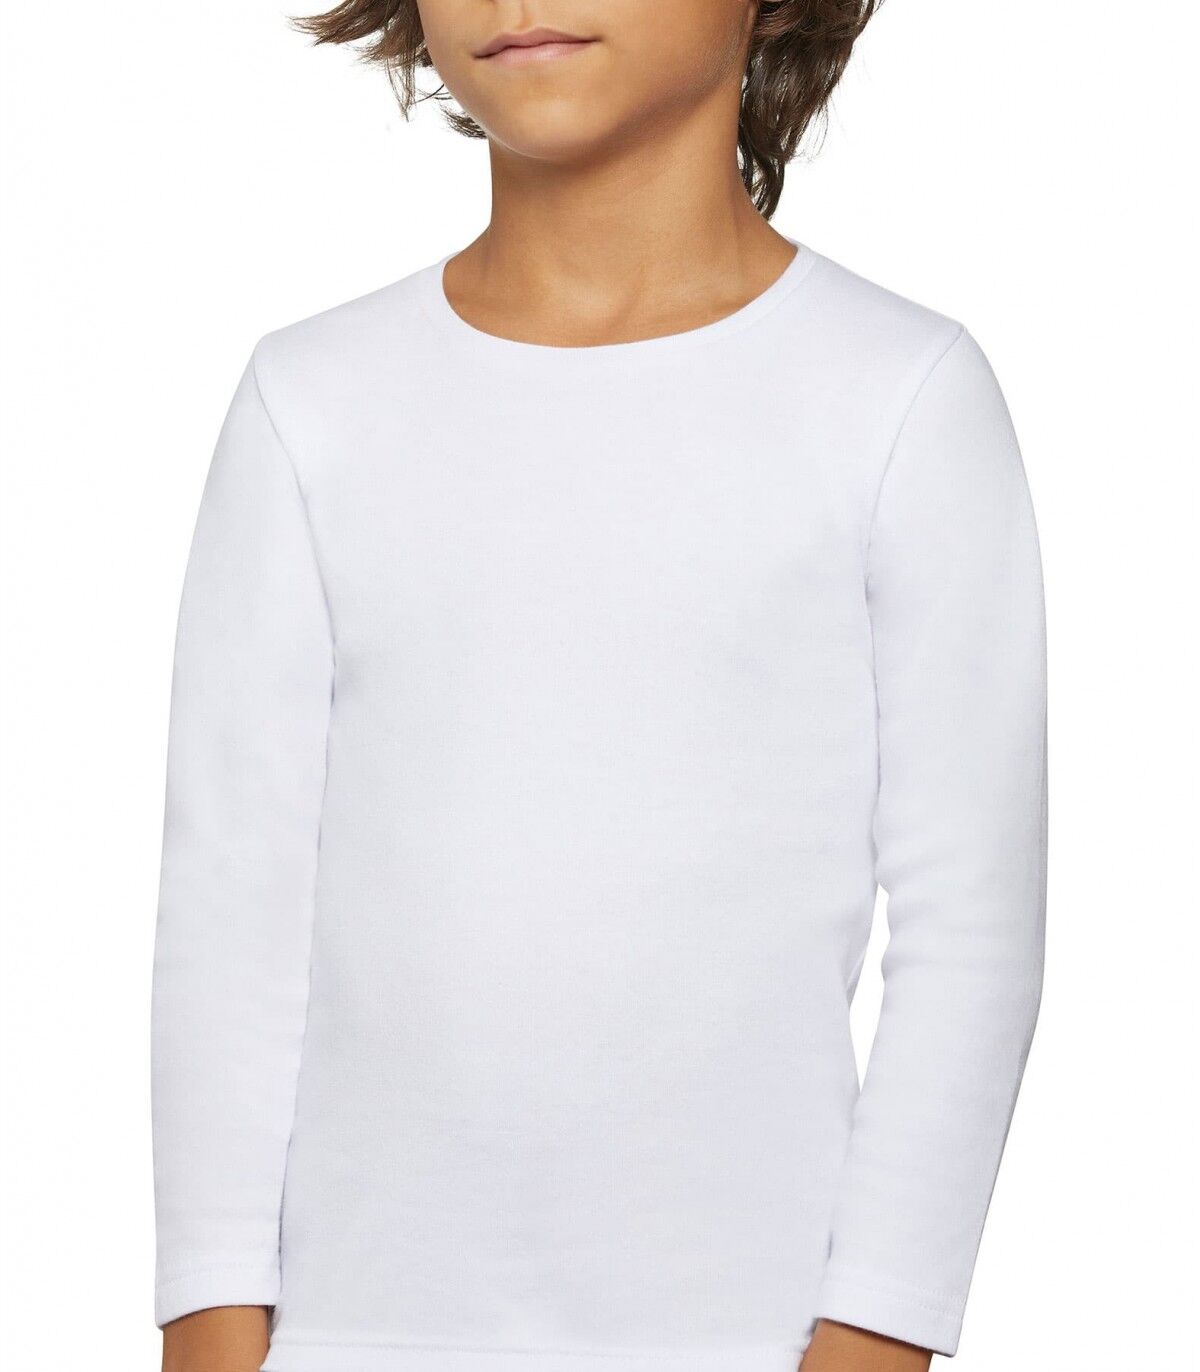 Camiseta infantil Térmica Ysabel Mora 18301 16 Blanco